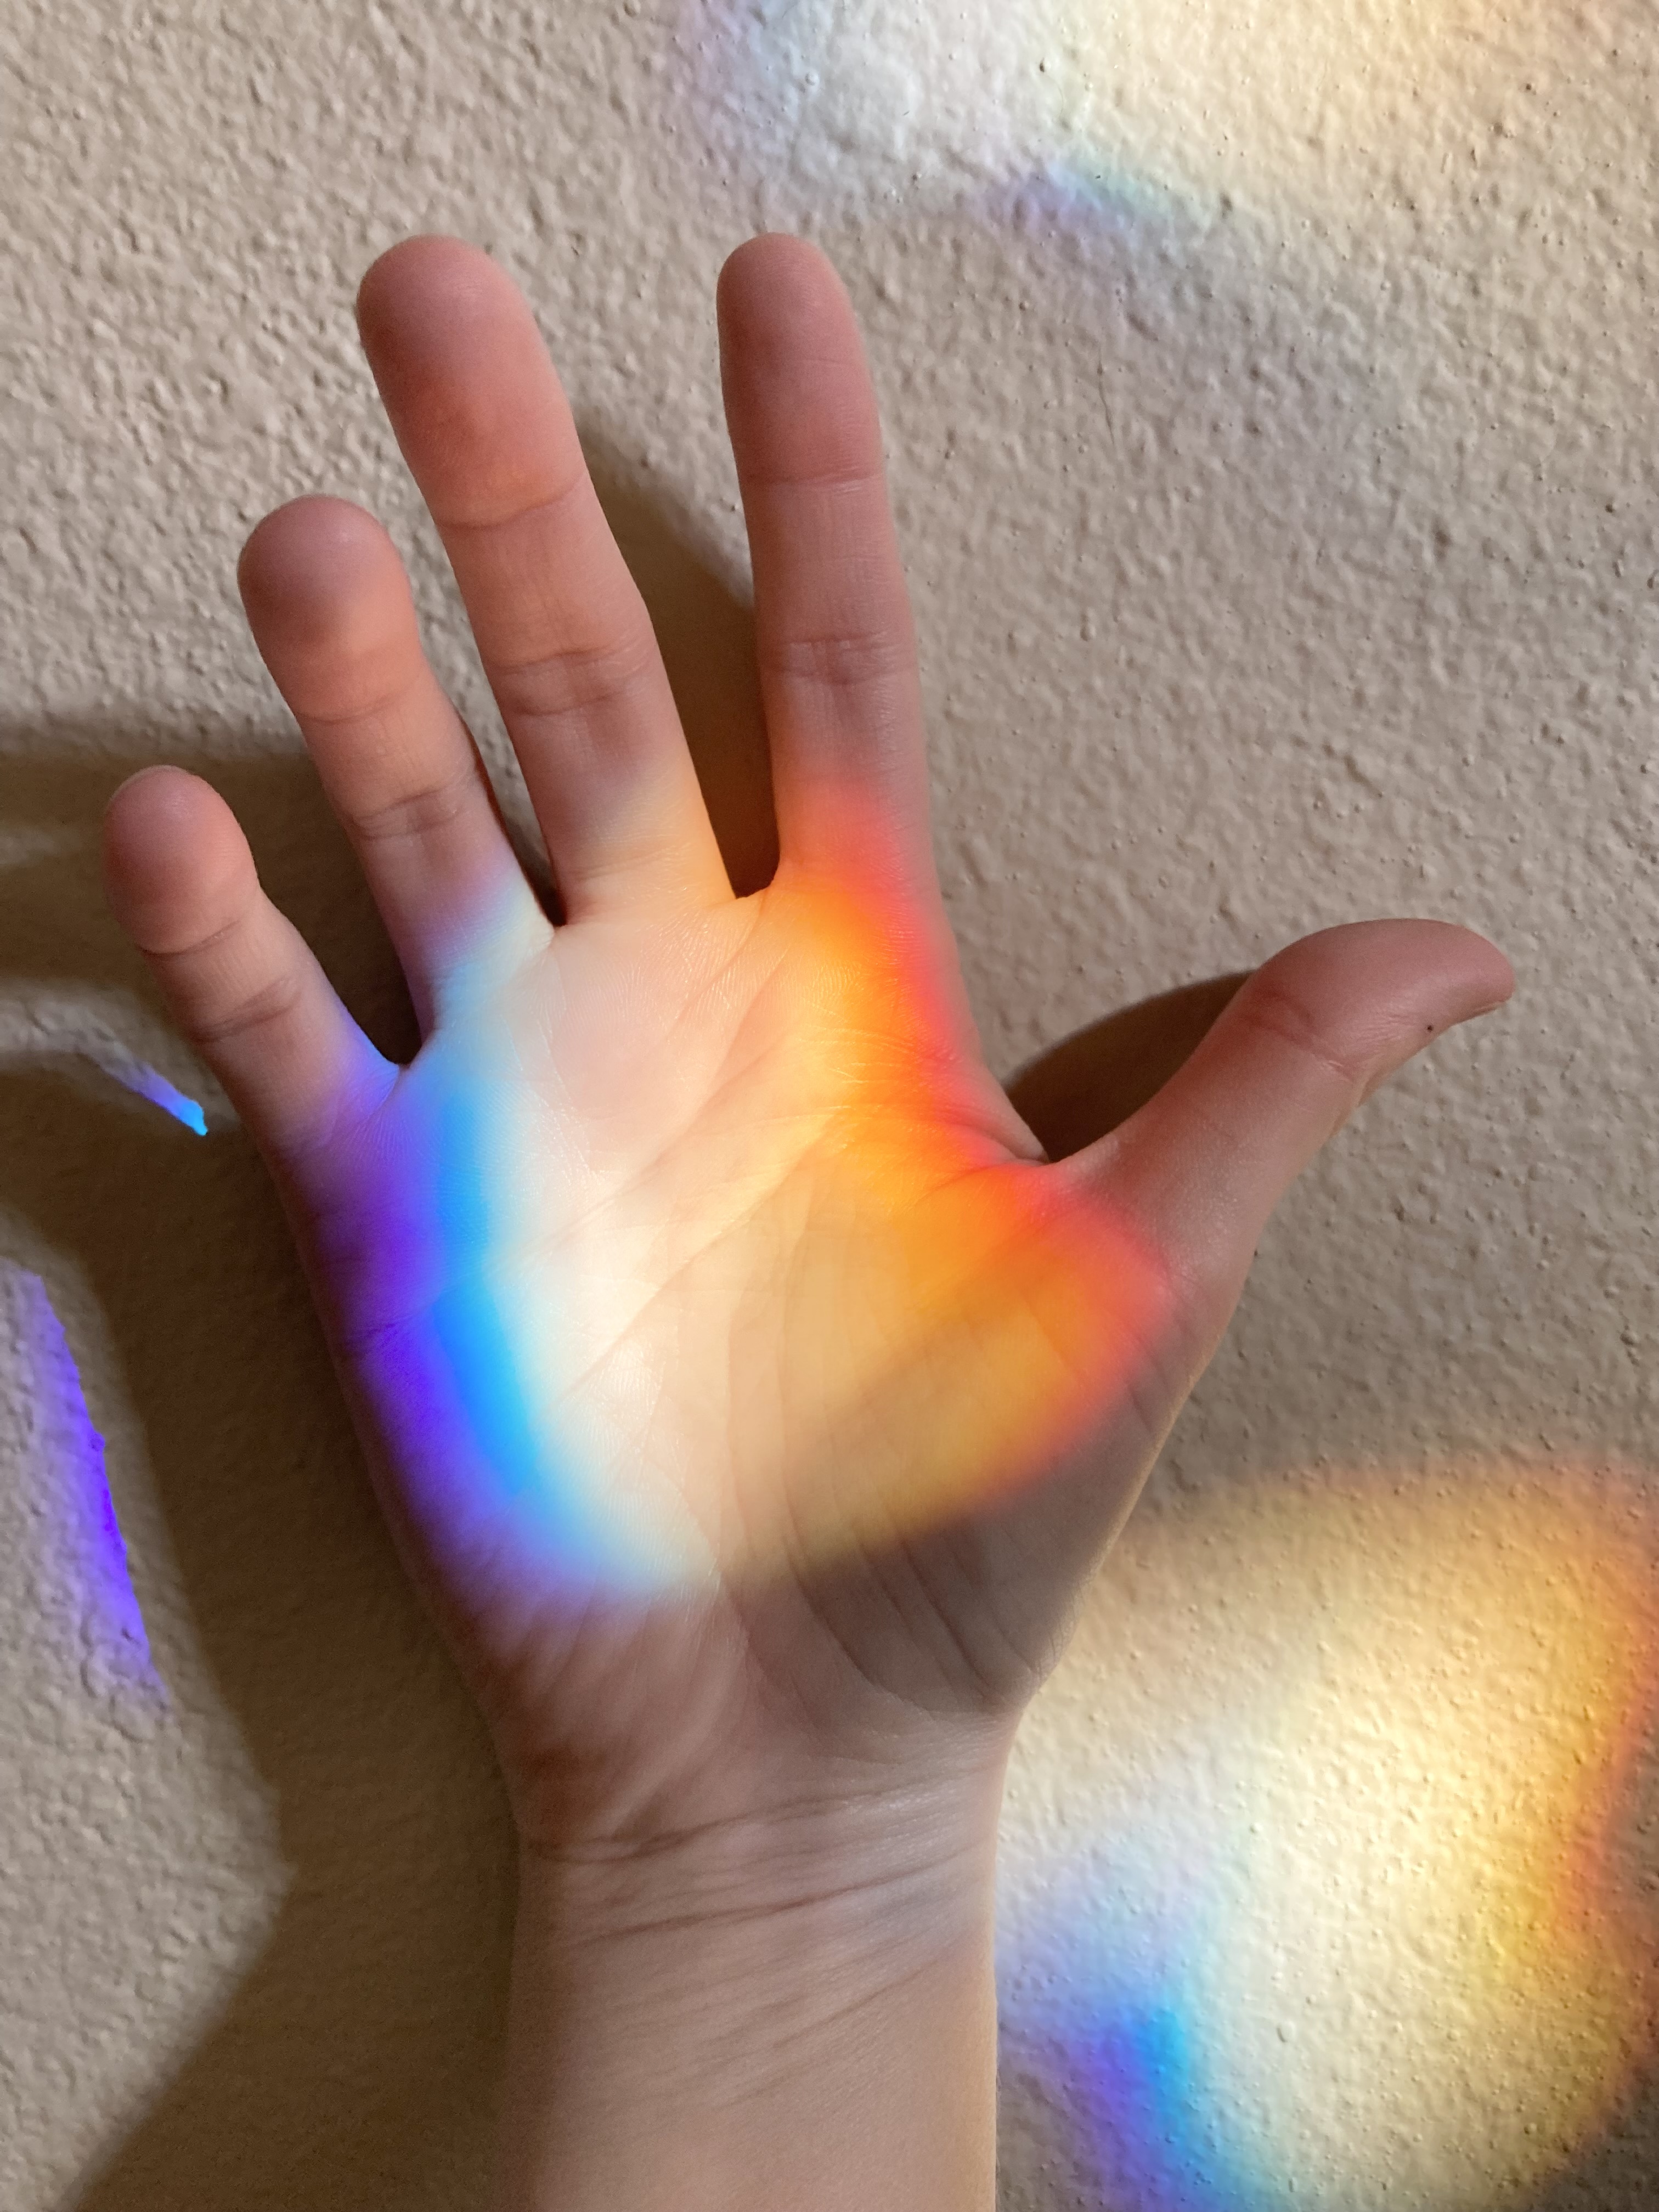 a hand with a rainbow